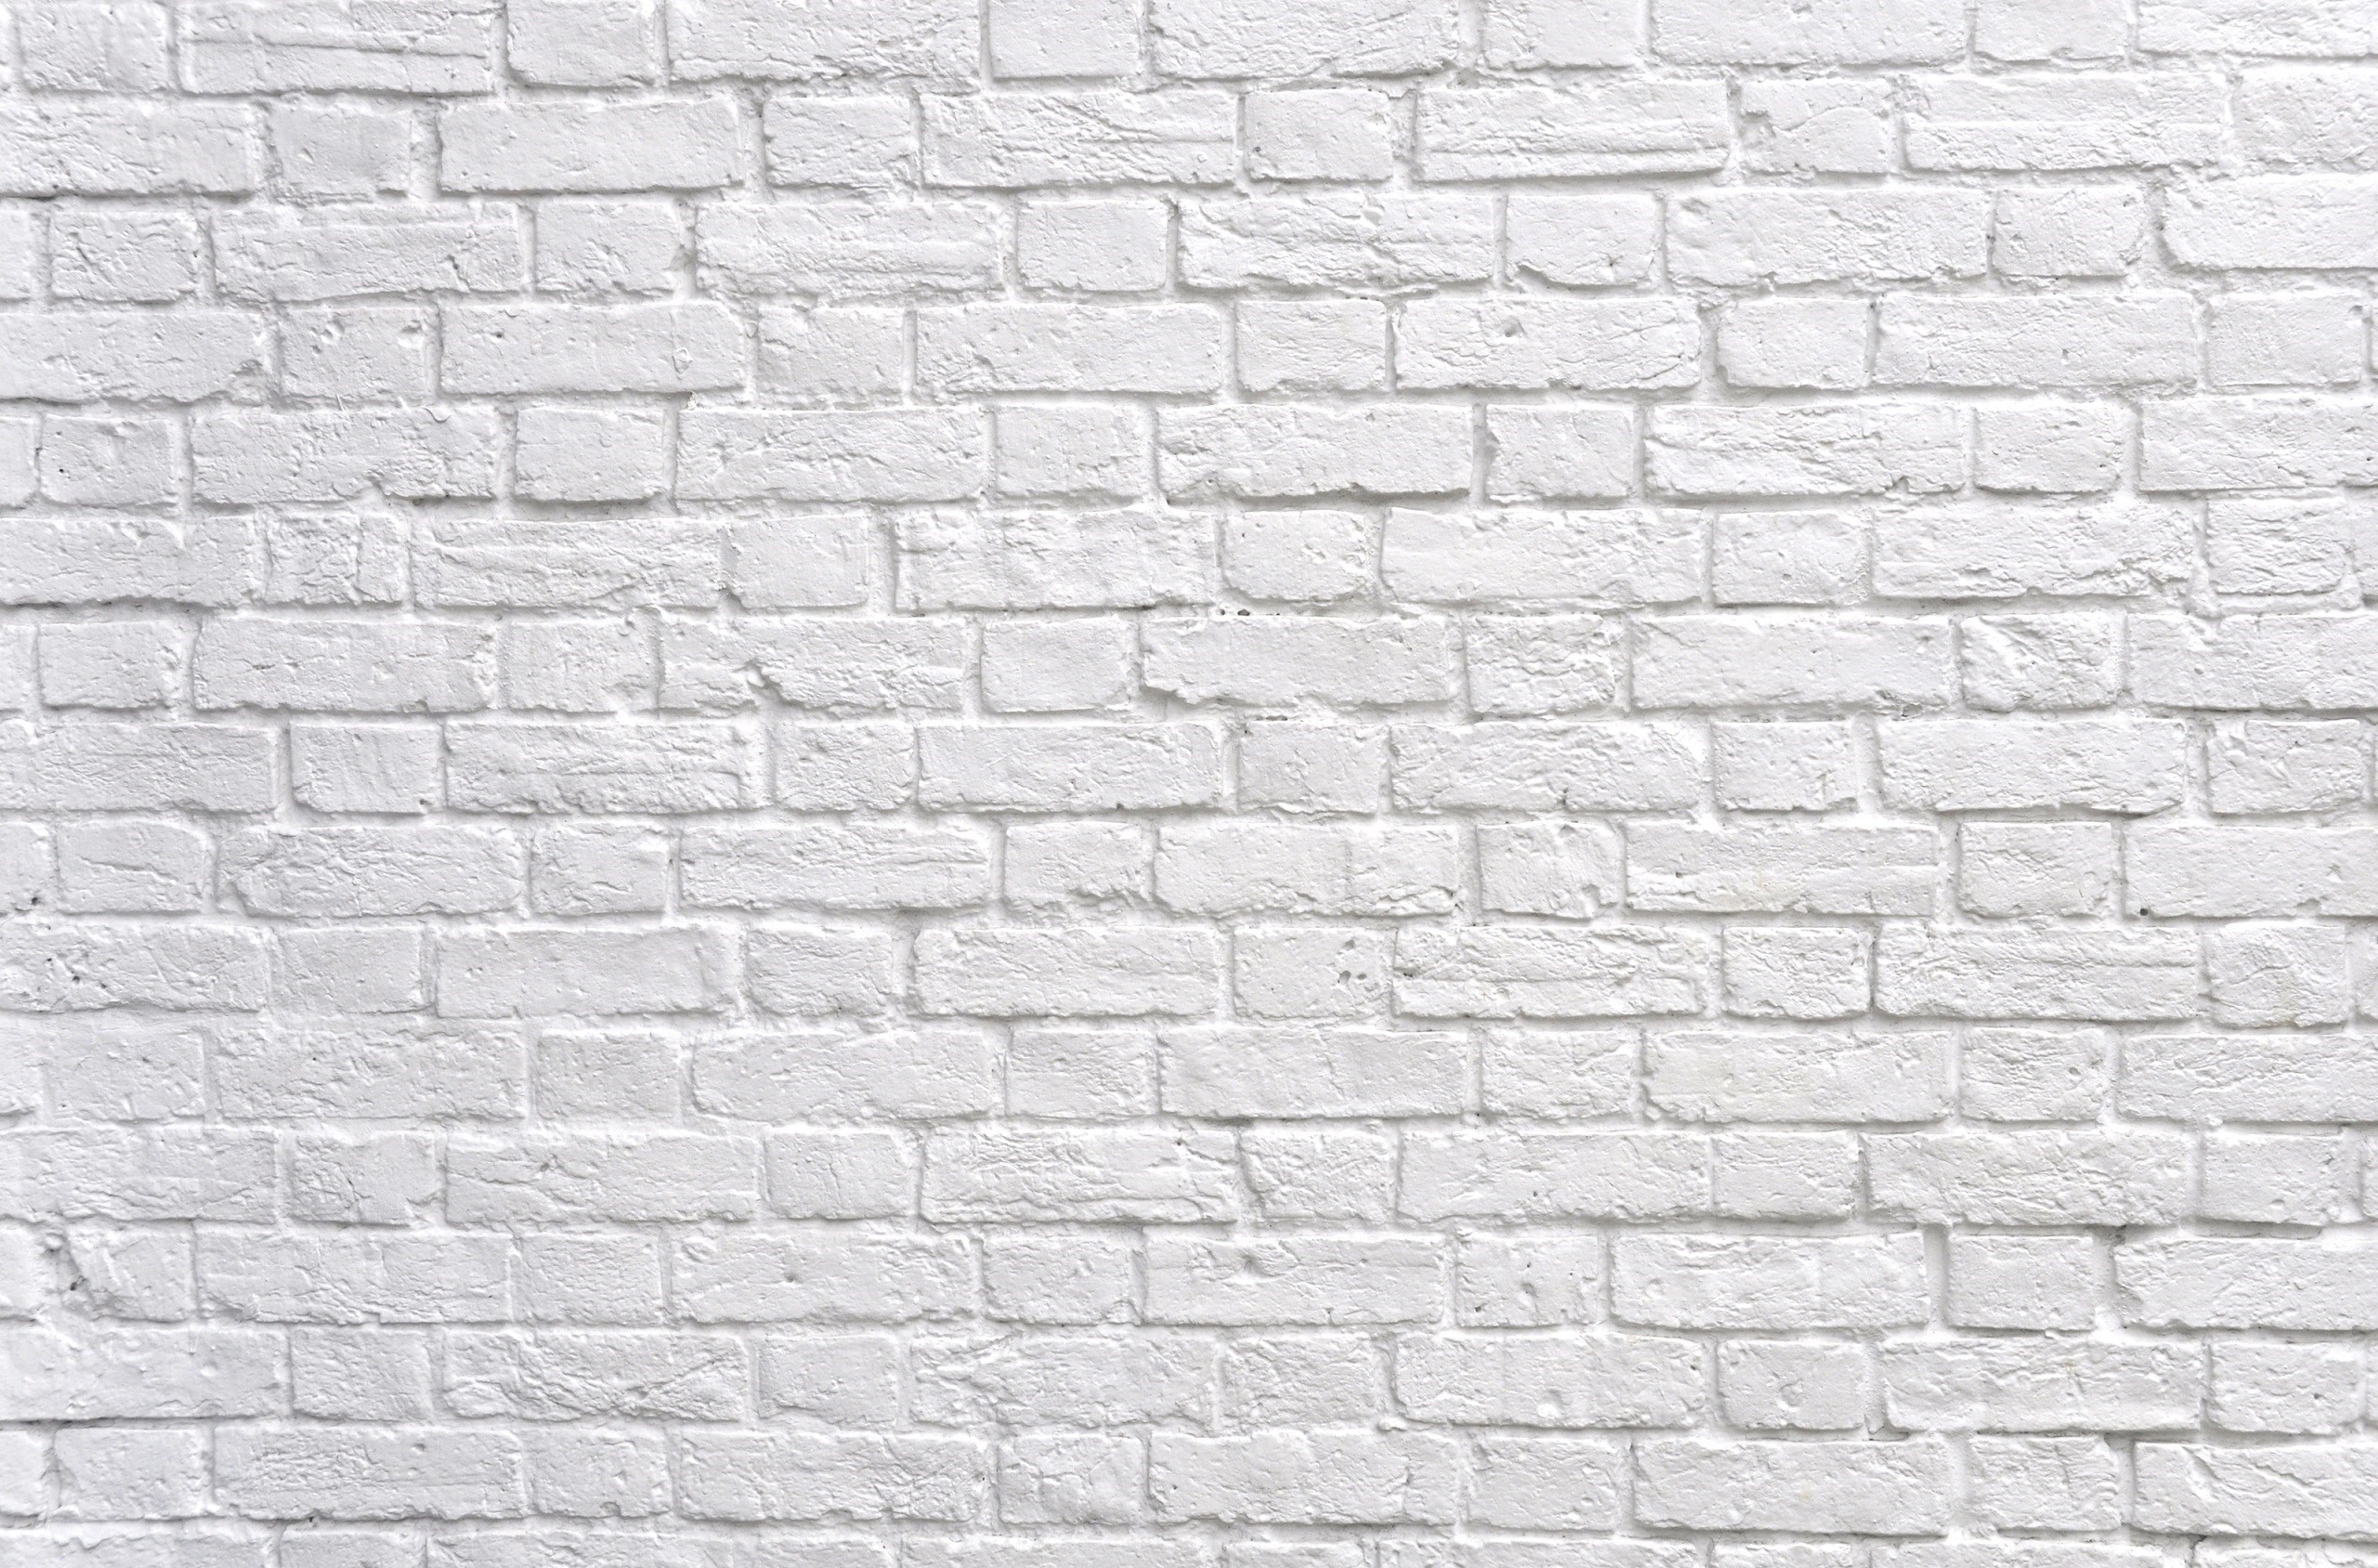 Bức ảnh Black and White Brick Wall Background này sẽ mang lại một cảm giác mạnh mẽ và chuyên nghiệp cho tổng thể thiết kế của bạn. Nếu bạn đang tìm kiếm hình ảnh để làm nền cho một trang web hay một bộ sưu tập ảnh, đây sẽ là sự lựa chọn hoàn hảo.